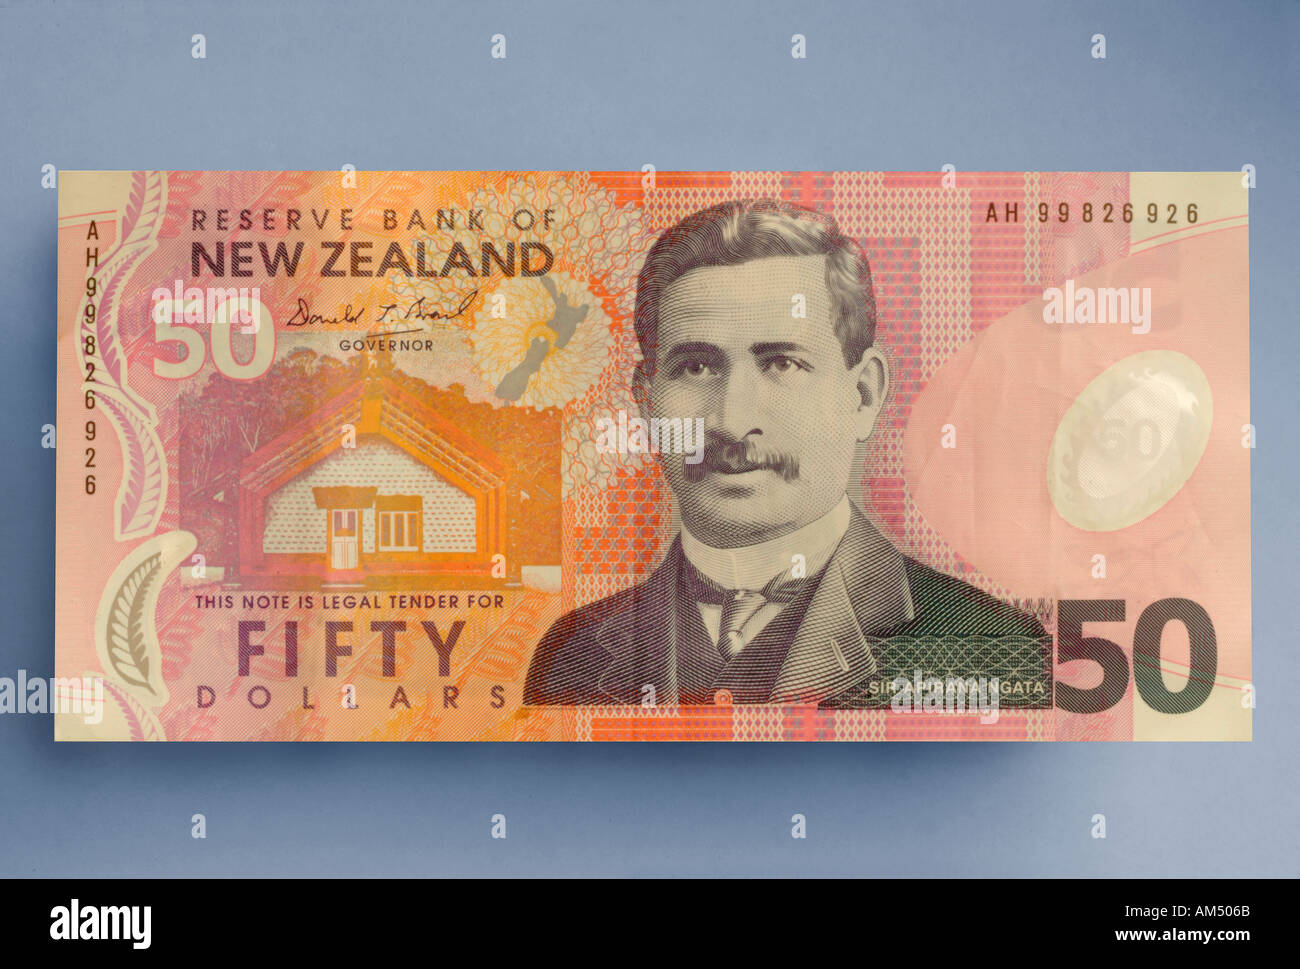 50 dollar bill from New Zealand Stock Photo